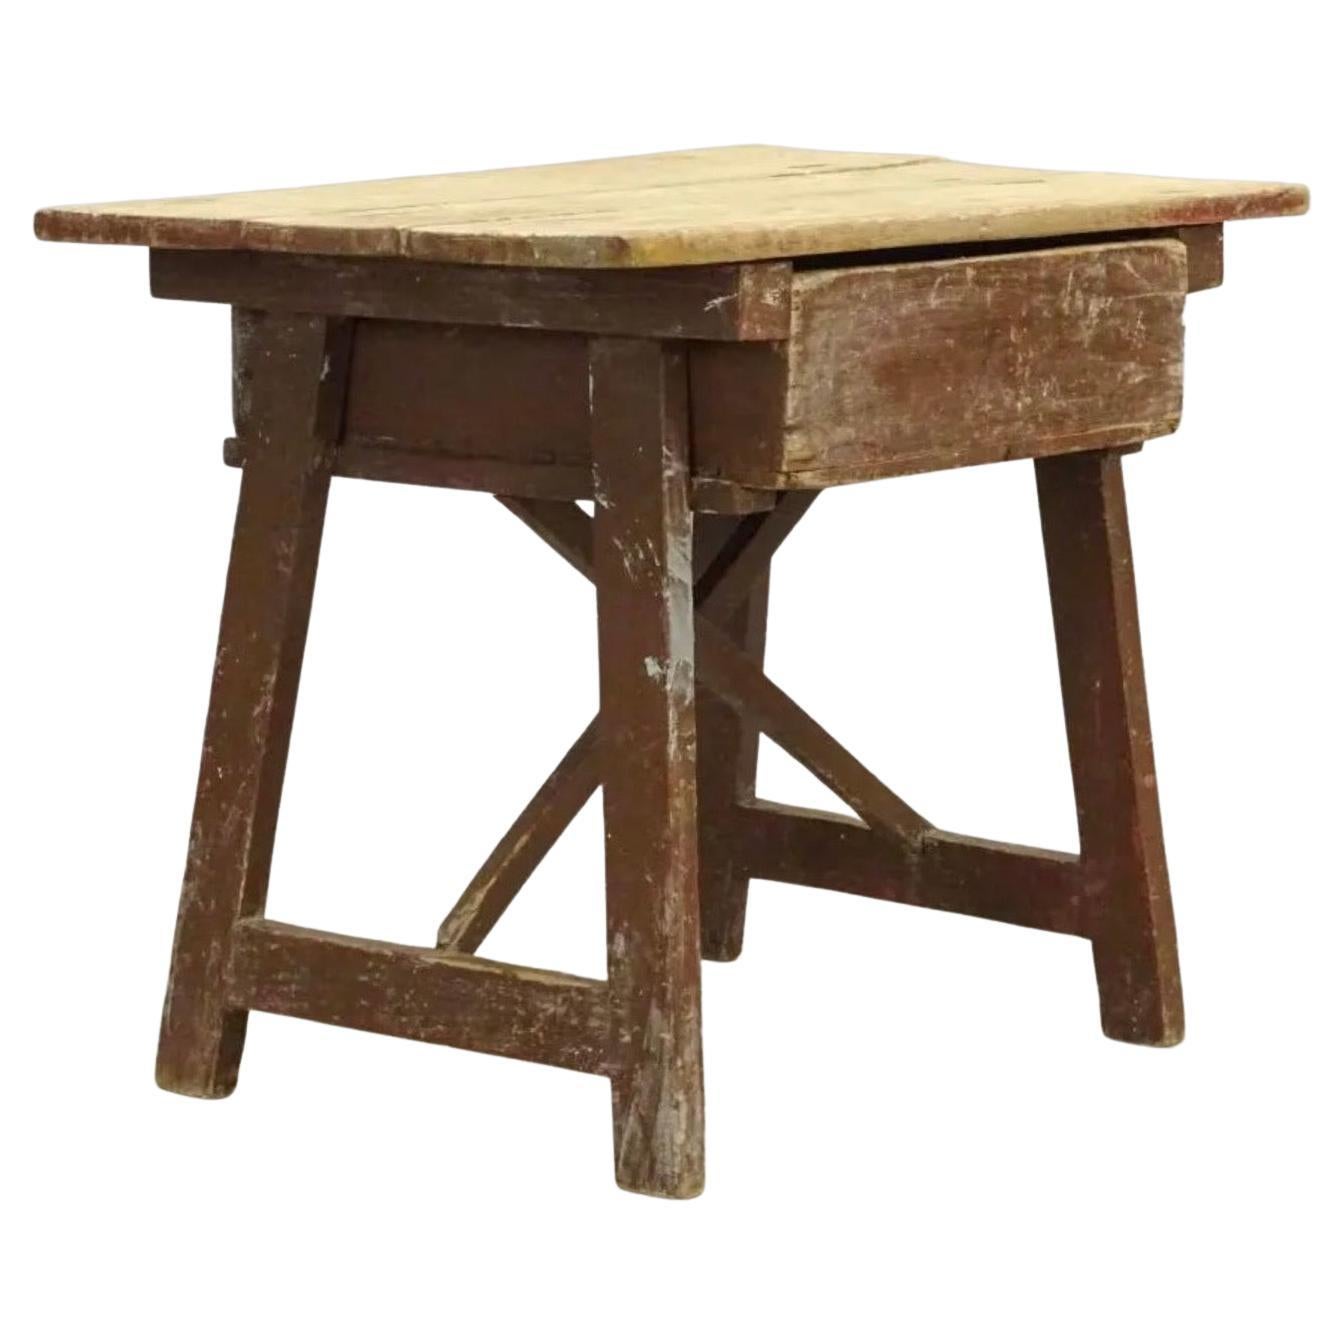 table d'appoint ou de travail du 19e siècle à un seul tiroir. La table a un merveilleux caractère ancien. Elle peut être utilisée comme table d'appoint ou table basse dans une décoration rustique, mais aussi comme un accent combiné à des pièces